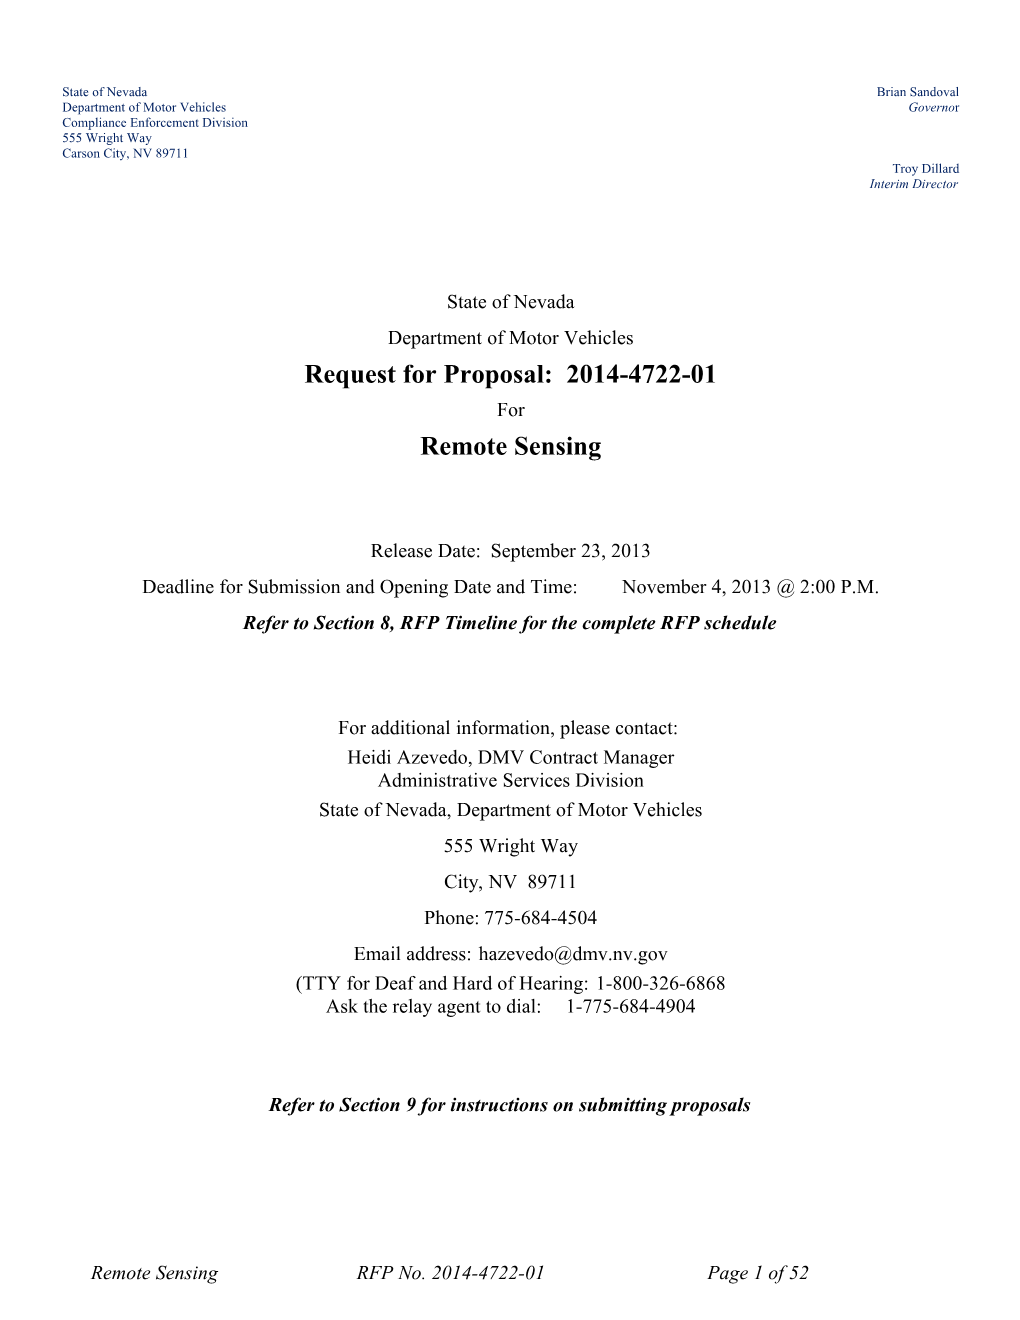 Vendor Information Sheet for Rfp 2014-4722-01